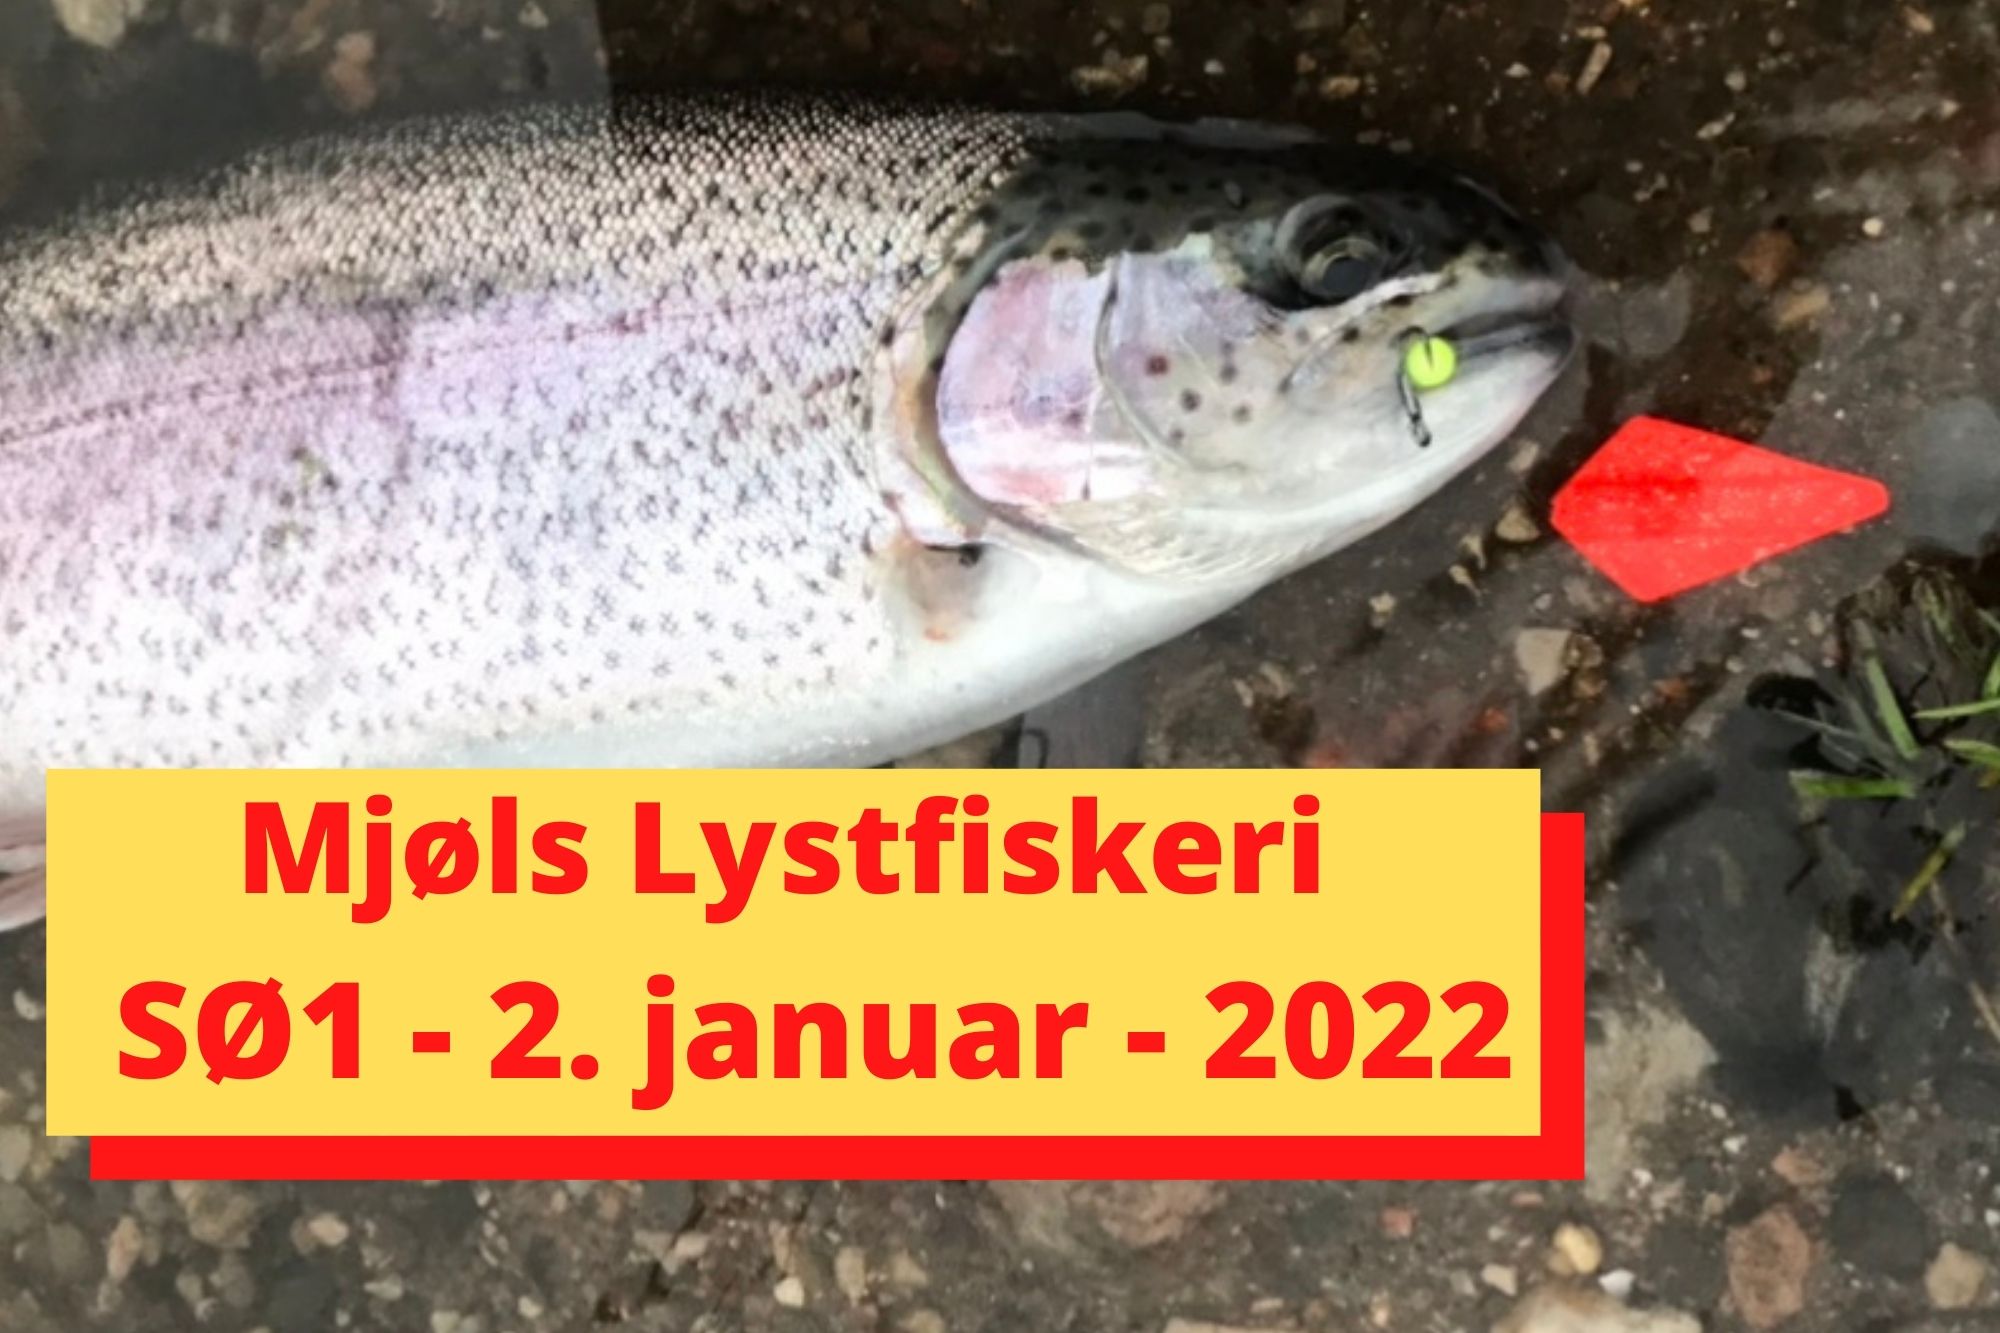 SE VIDEO – Mjøls Lystfiskeri – SØ1 – 2. januar 2022 – de hugger som bare